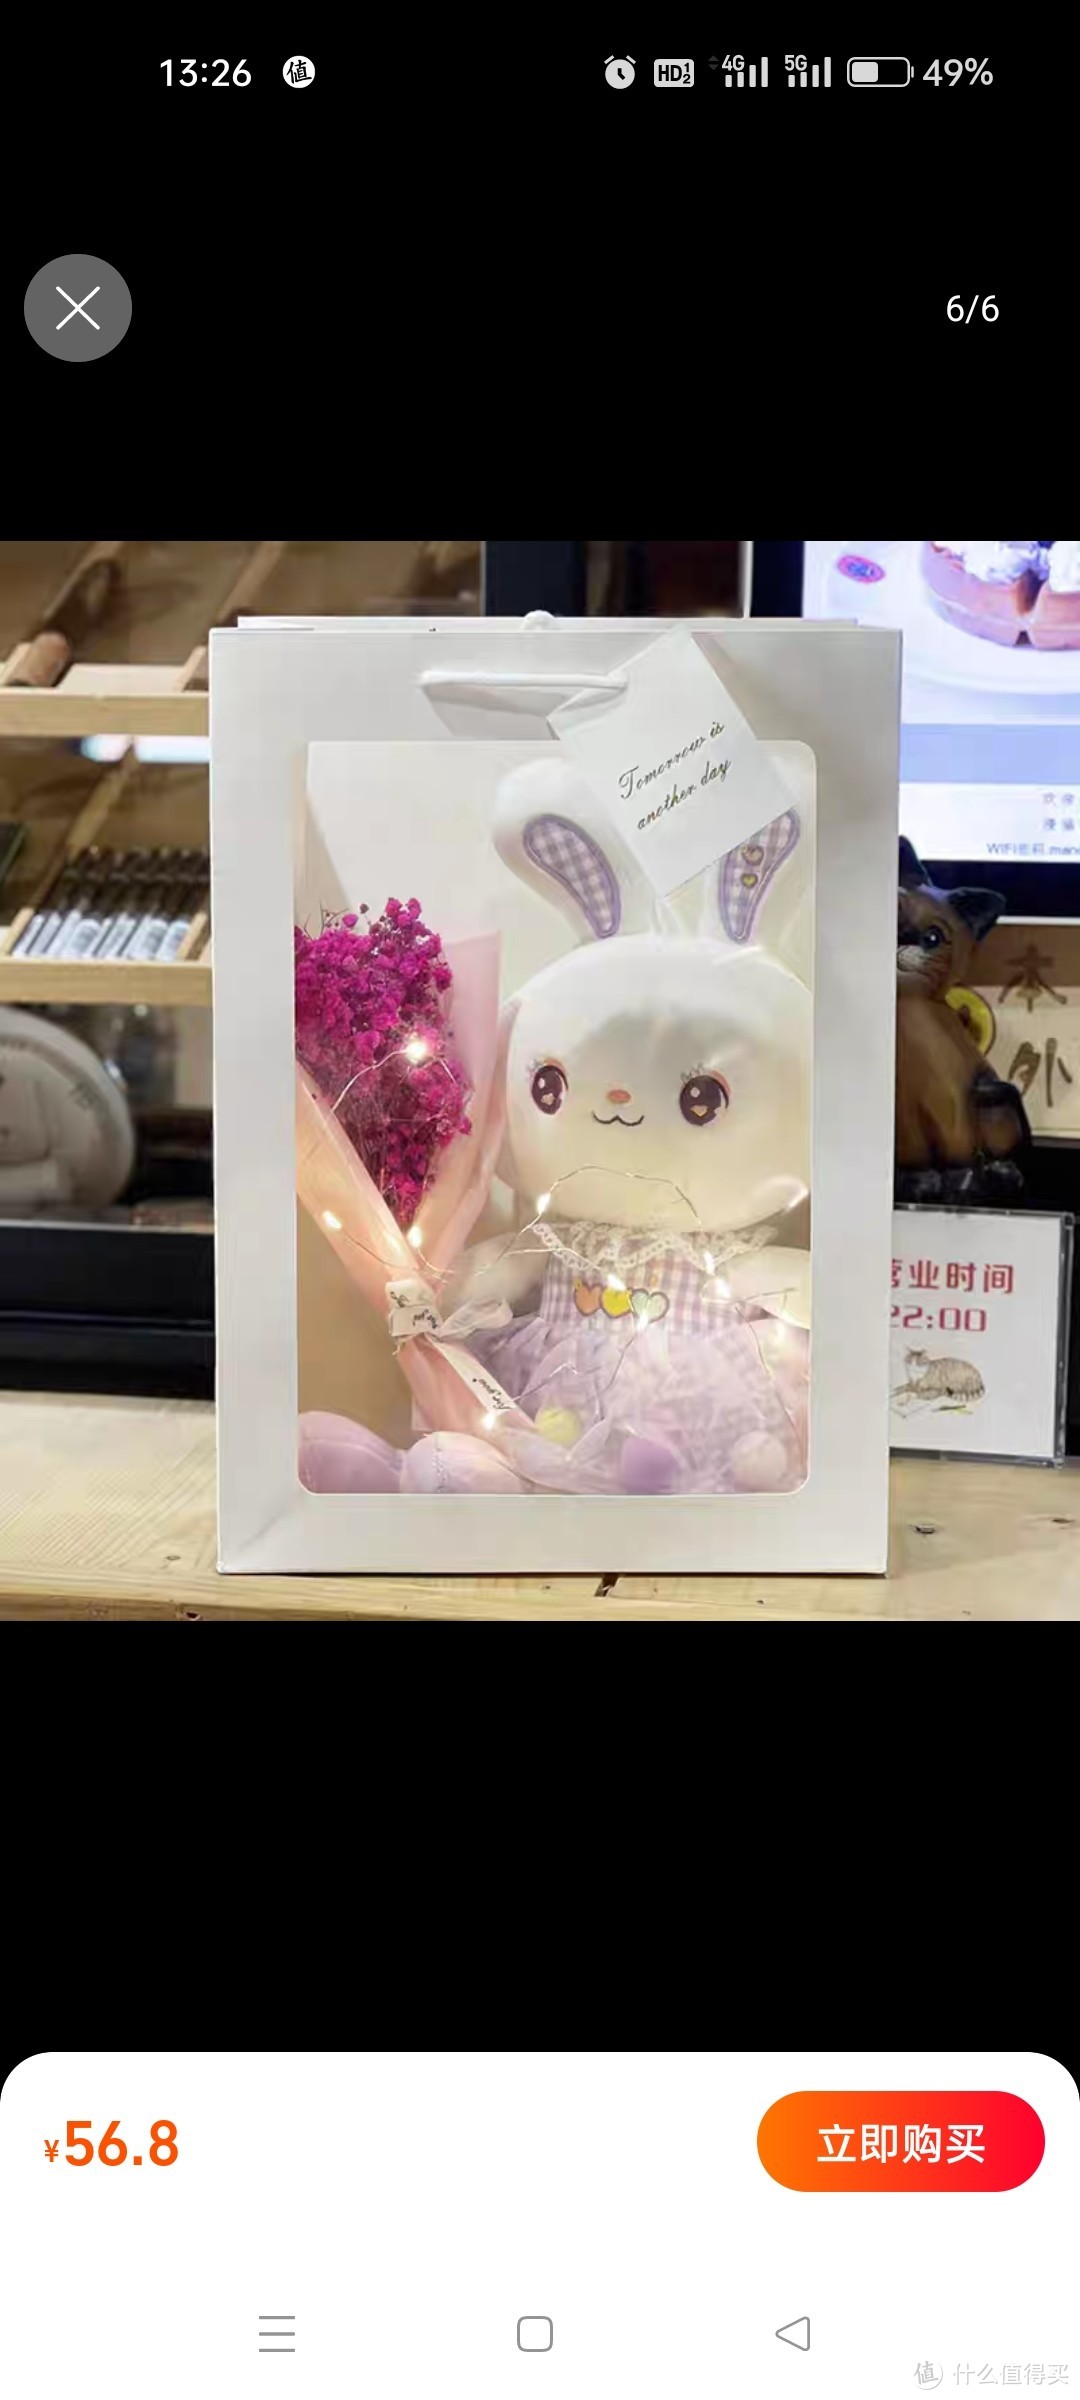 礼盒小兔子毛绒玩具可爱小白兔公仔玩偶情人节送女友闺蜜生日礼物